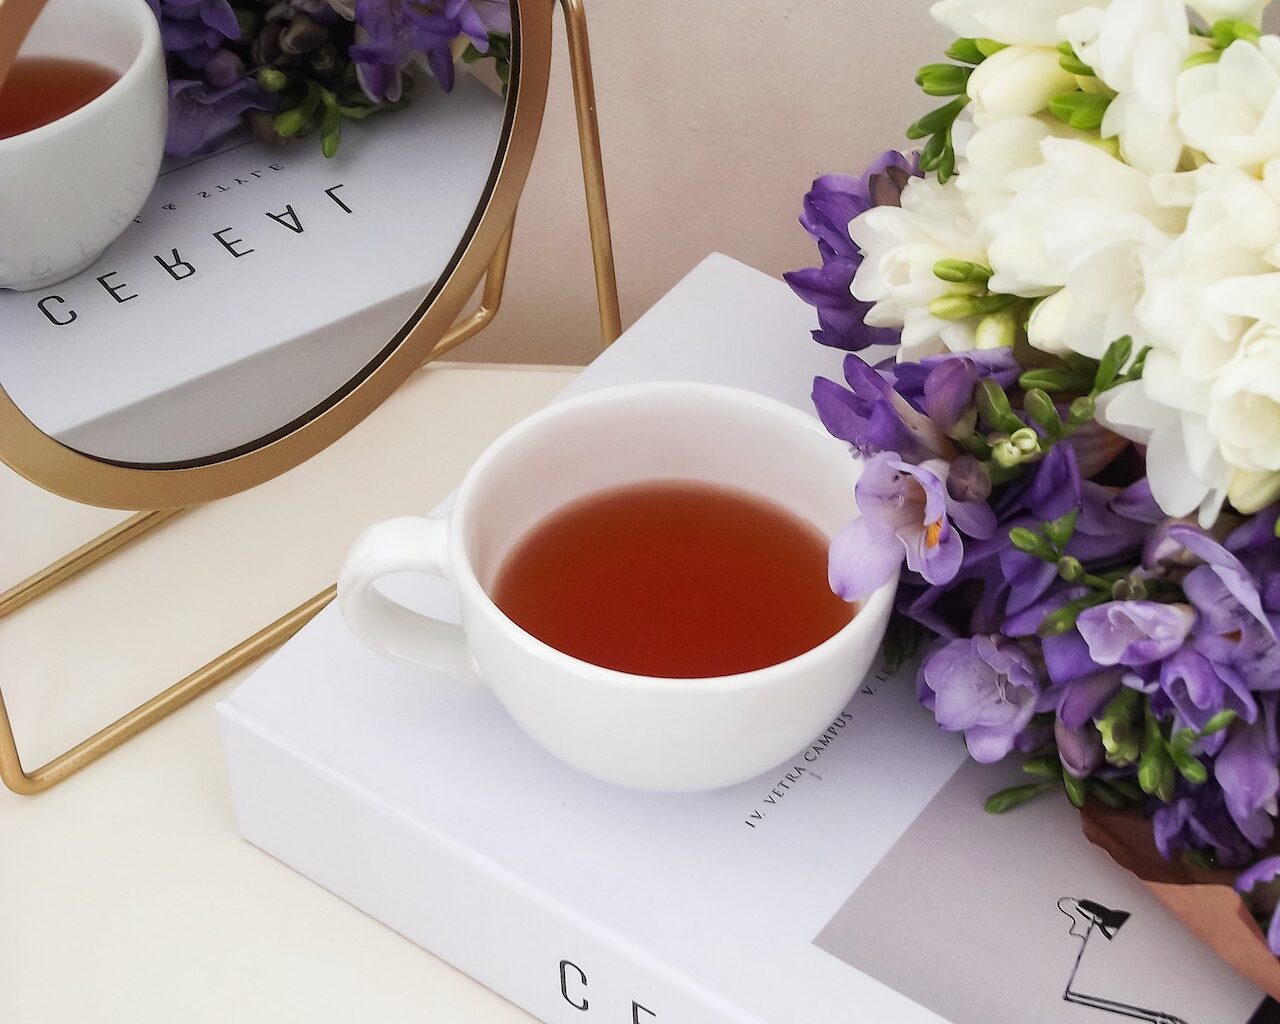 Πρέπει να αντικαταστήσεις το κλασσικό τσάι που πίνεις με τσάι από μανιτάρια;!